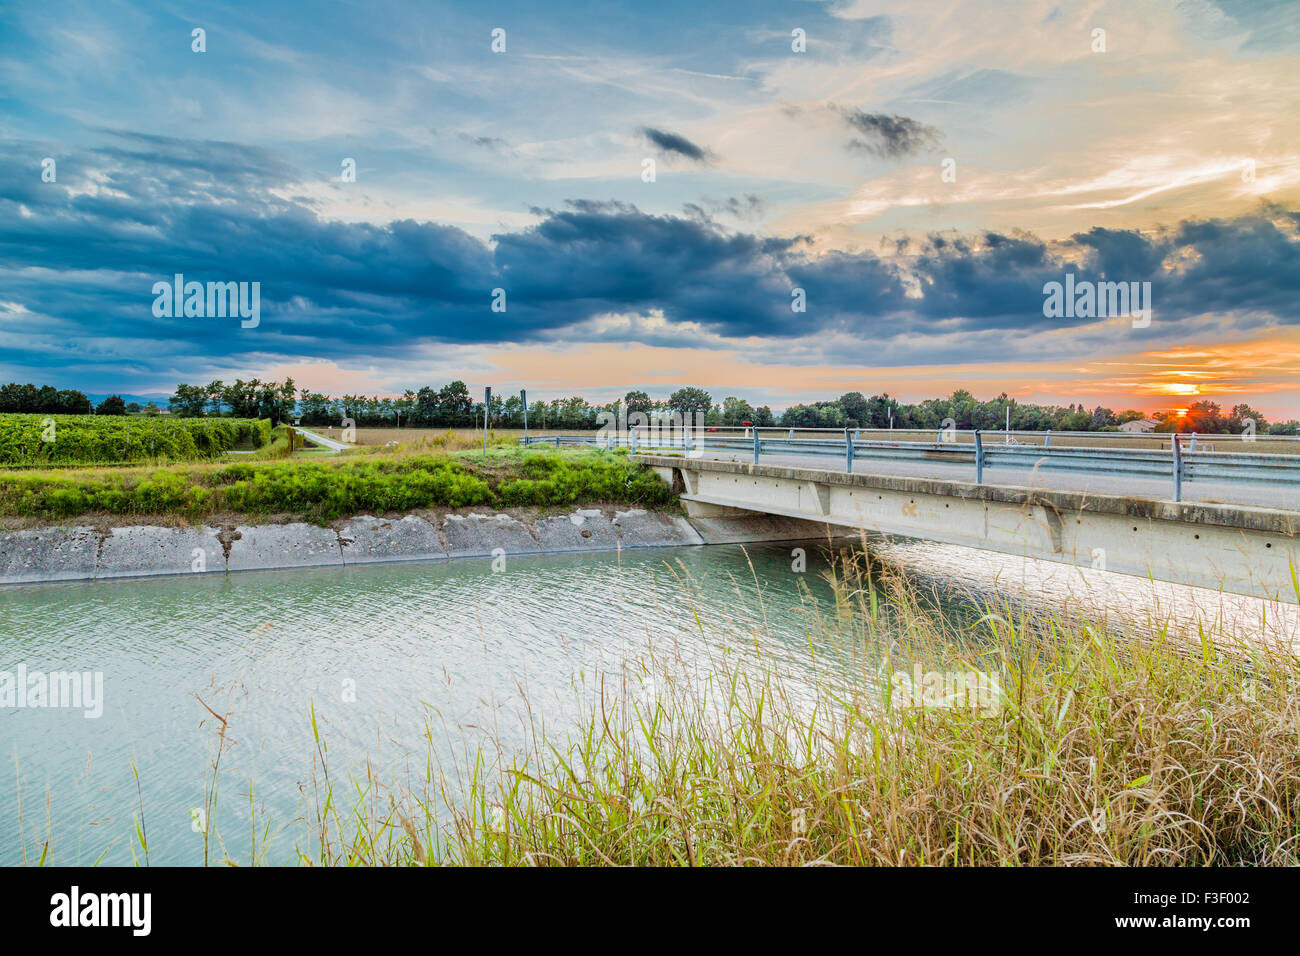 Puente sobre el canal grande desviar agua del río para riego de campos de cultivo Foto de stock